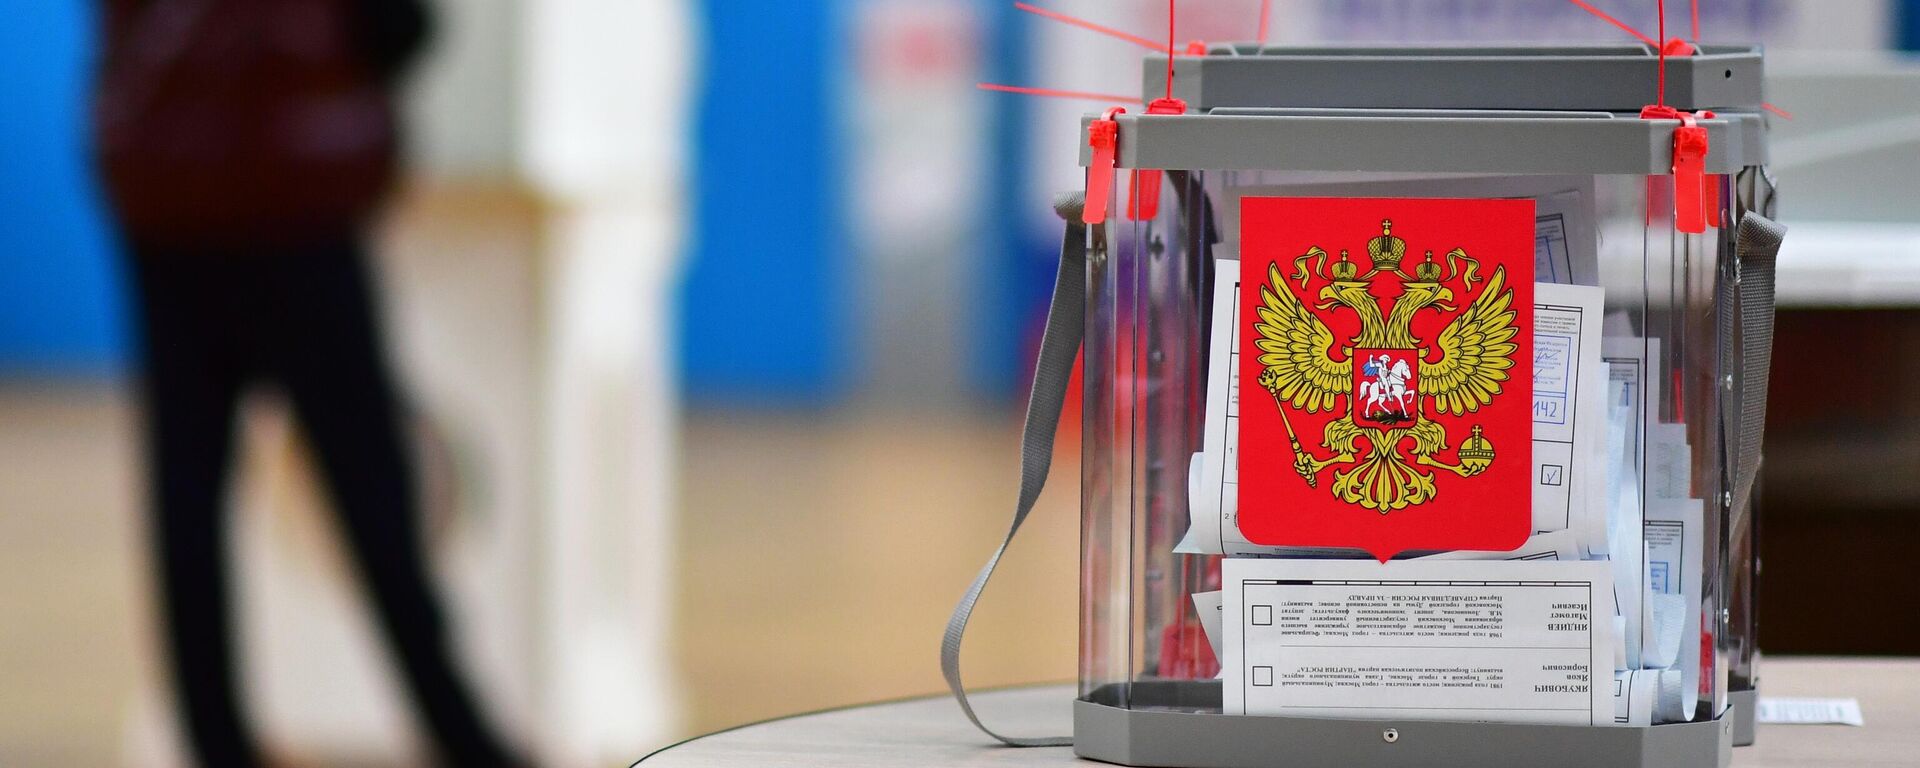 Una urna en las elecciones parlamentarias en Rusia - Sputnik Mundo, 1920, 21.09.2021